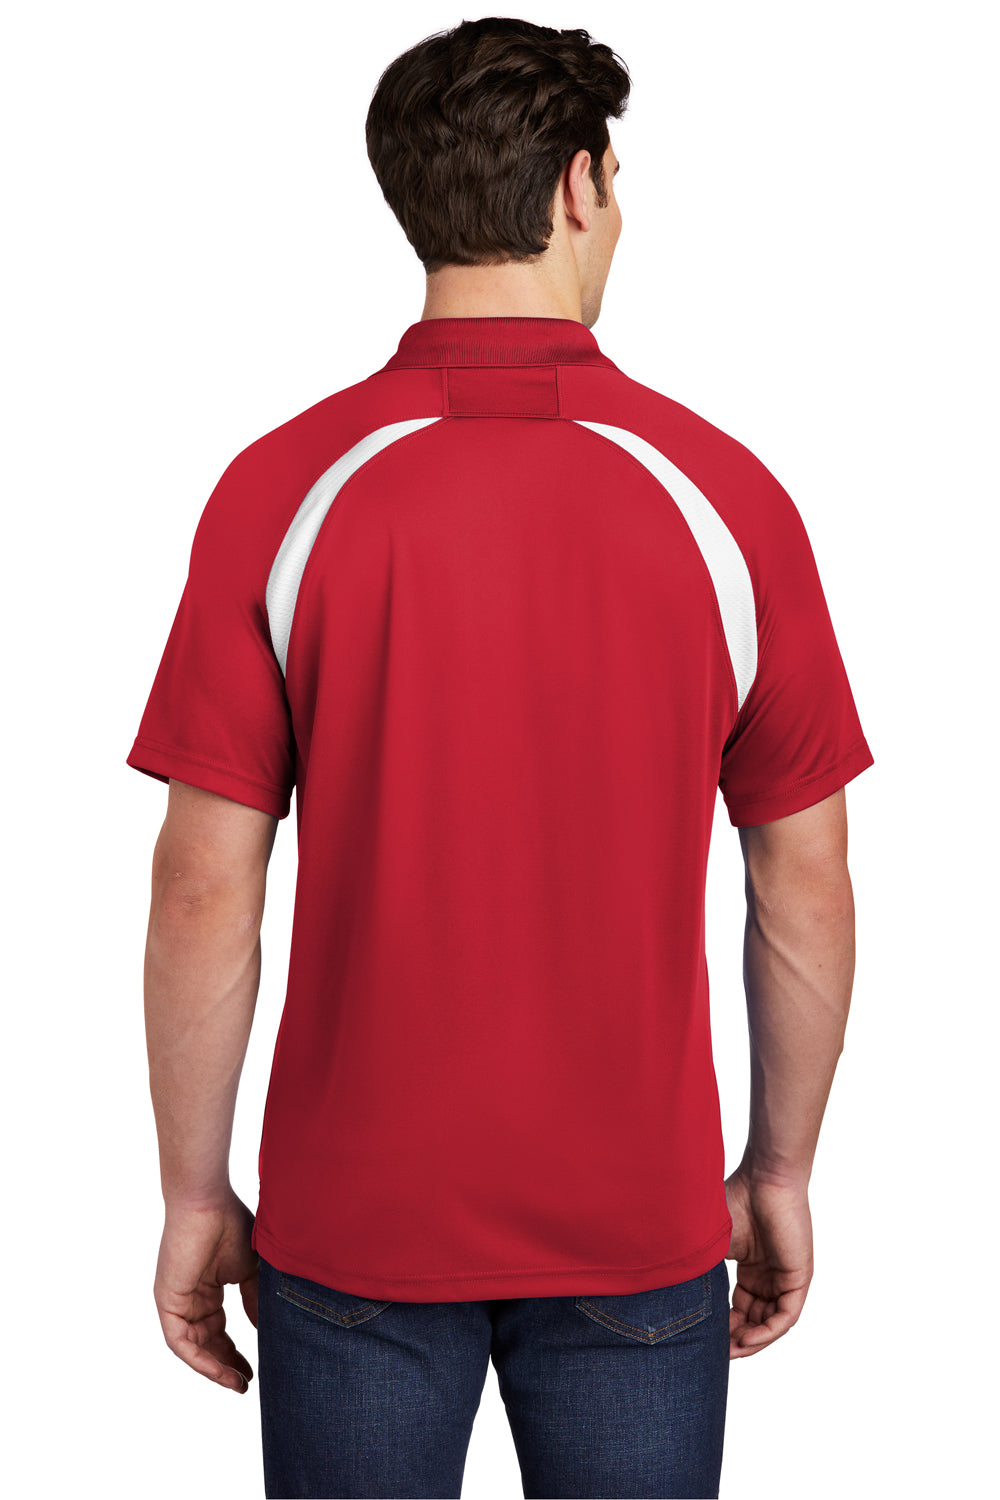 Sport-Tek T476 Mens Dry Zone Moisture Wicking Short Sleeve Polo Shirt Red Back